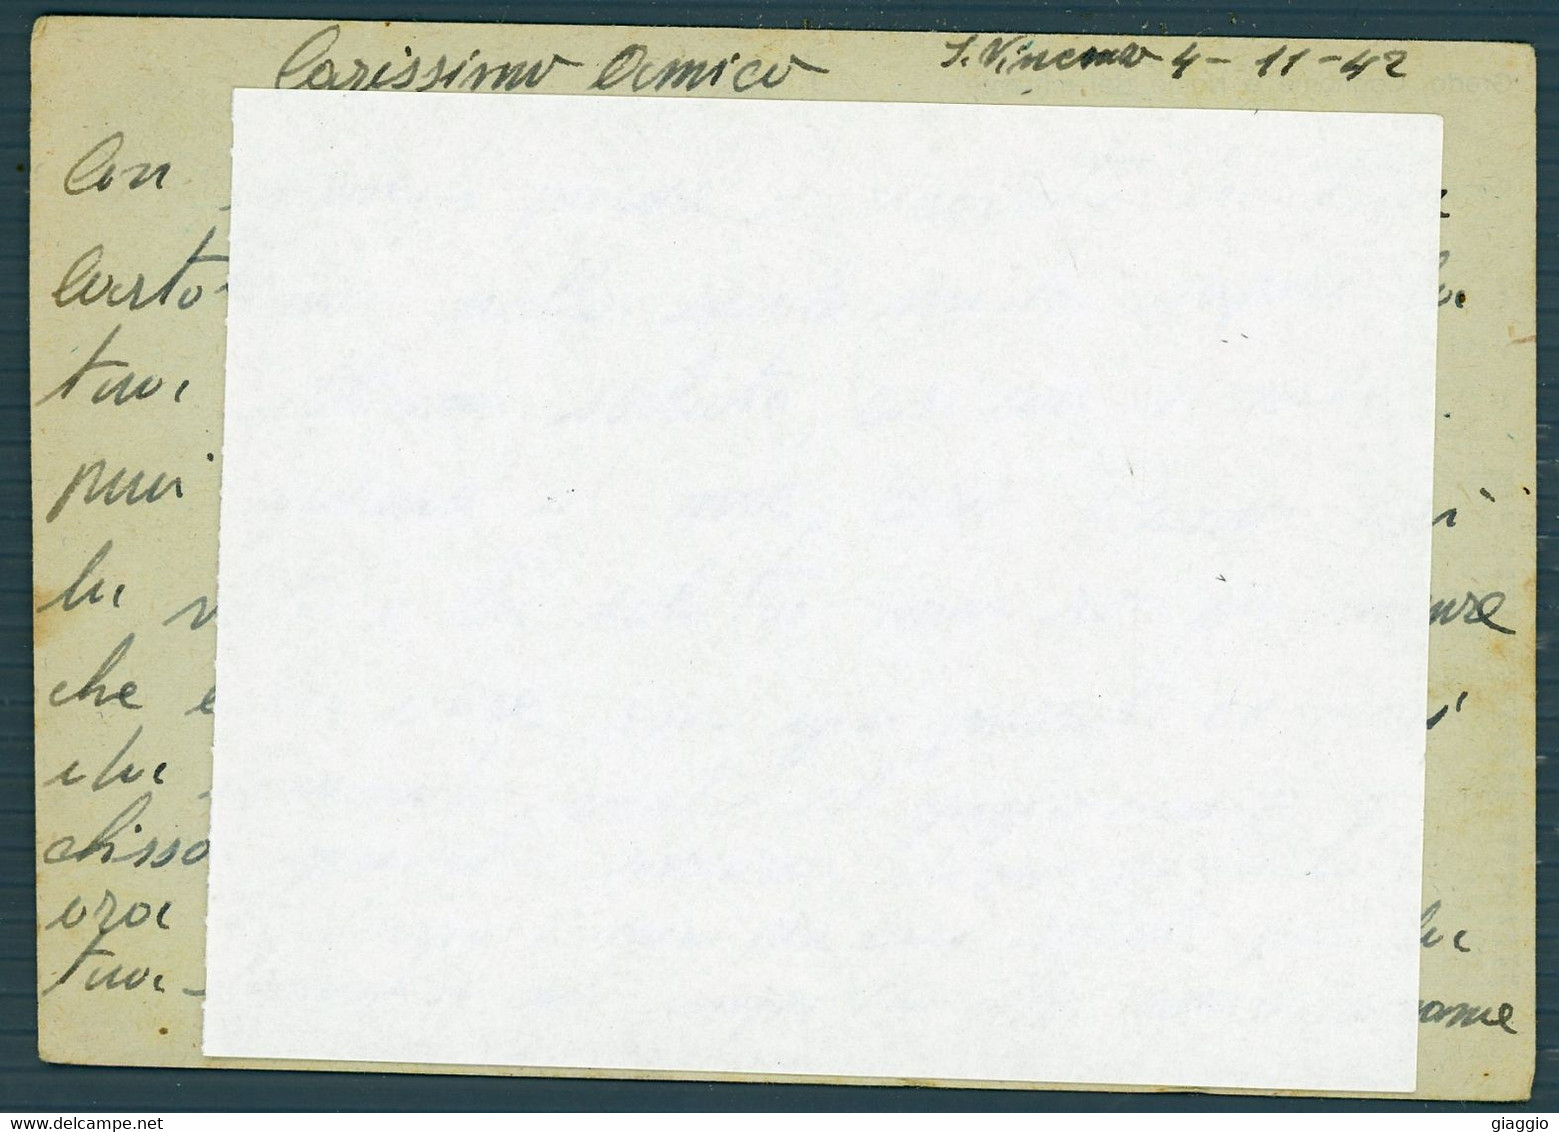 °°° Cartolina Postale N. 4957 - Per Le Forze Armate °°° - 1939-45